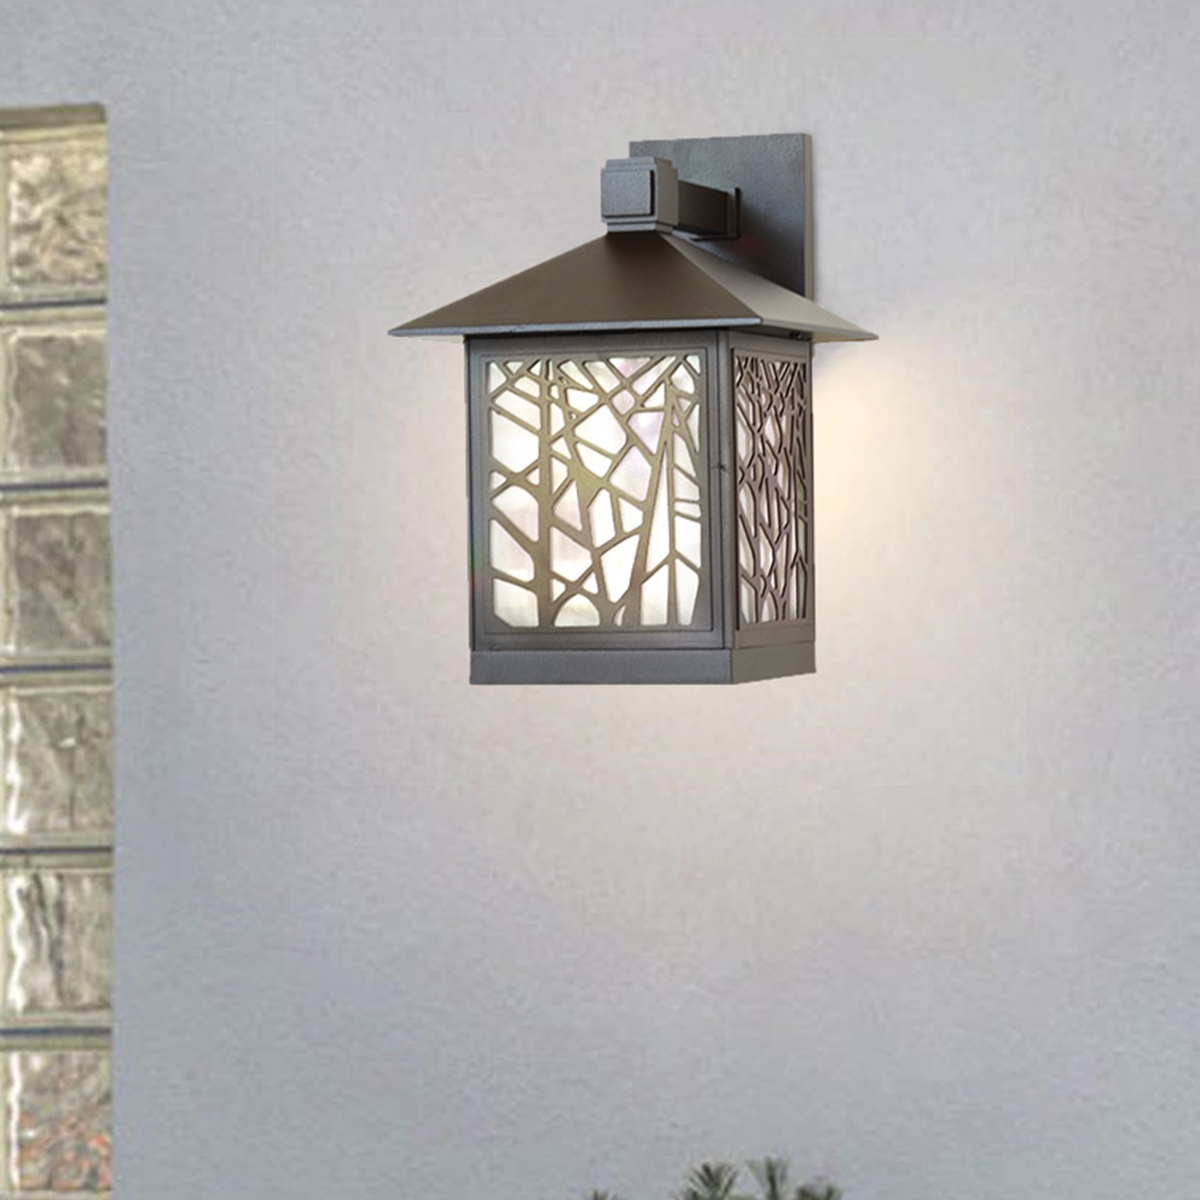 الإضاءة الخارجية - إضاءة على الجدار - زجاج صلب - اللون بني141101-E27